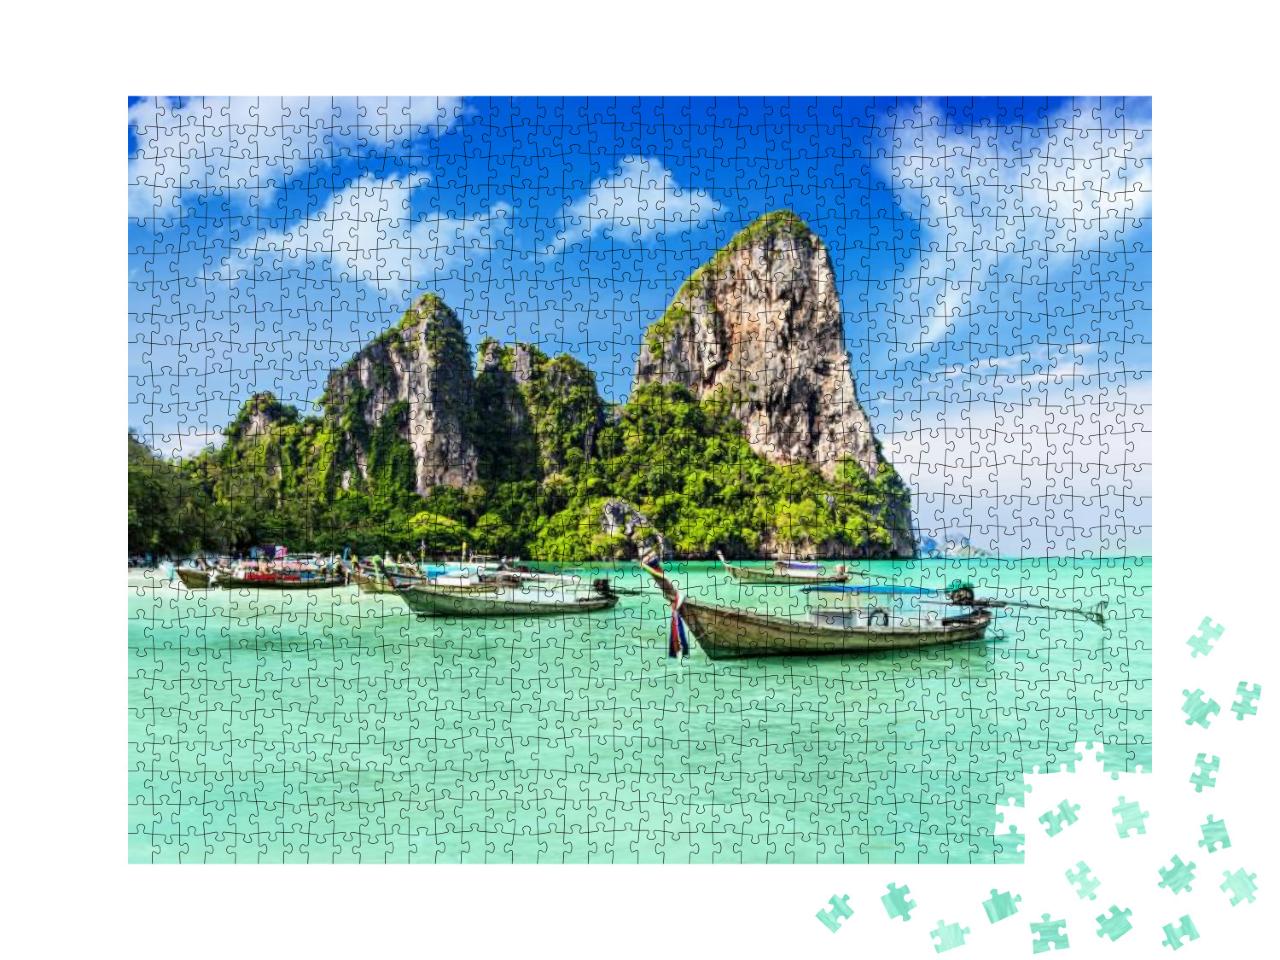 Puzzle 1000 Teile „Ein Sommertraum: schöner Strand in Thailand“